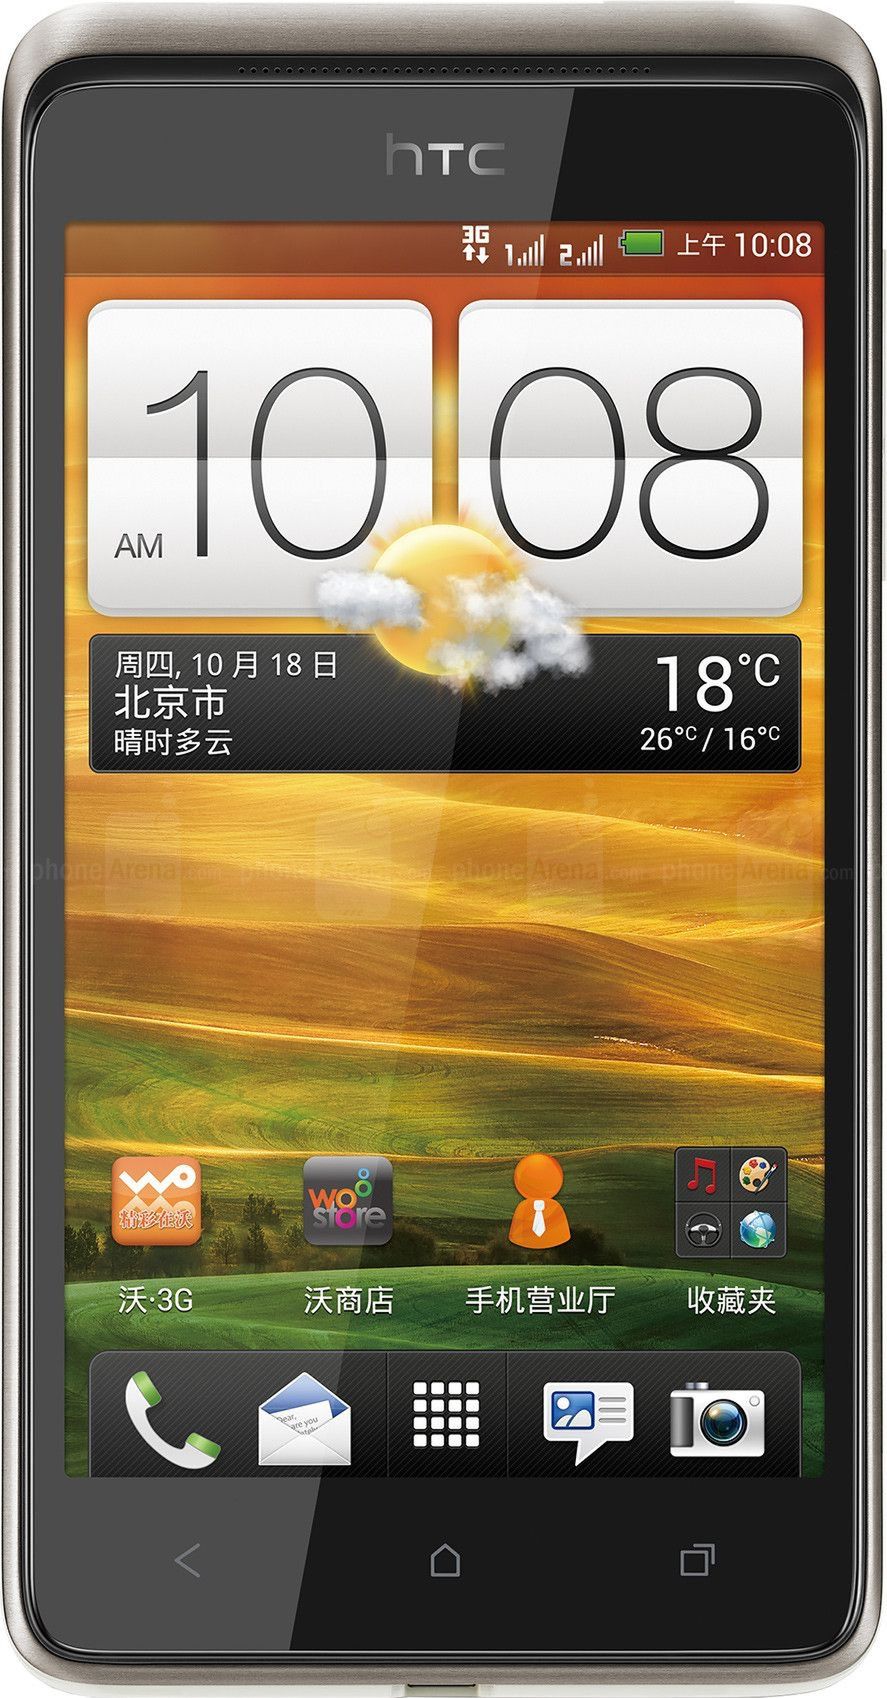 HTC Desire 400 ma podwójny slot na karty SIM.